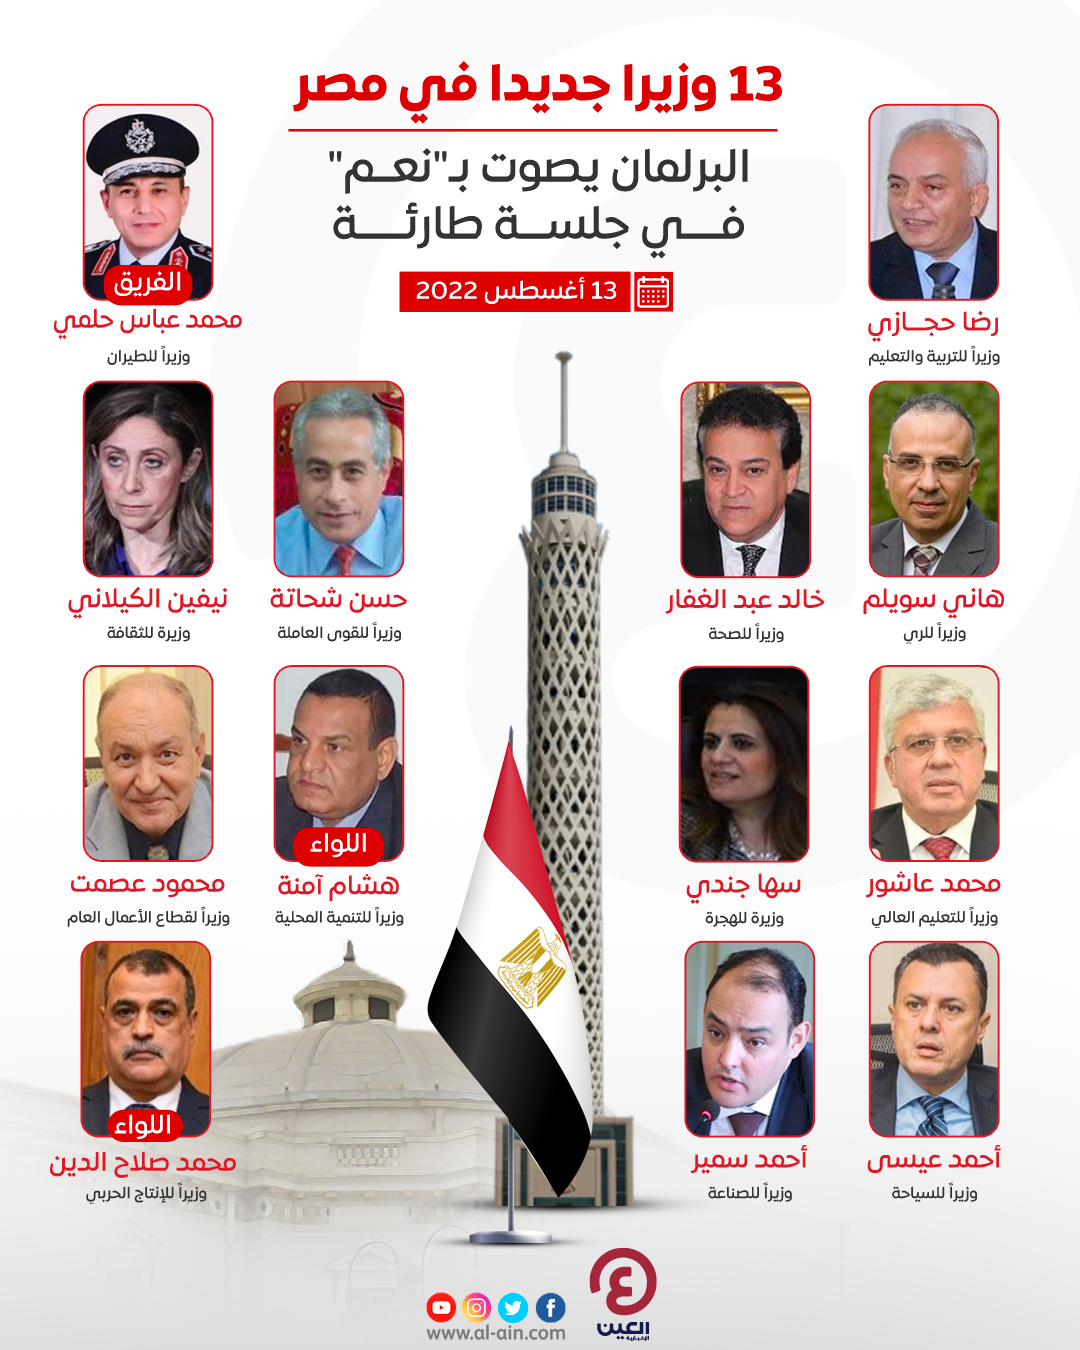 صورة كشف اسماء الوزراء الجدد في مصر ٢٠٢٢